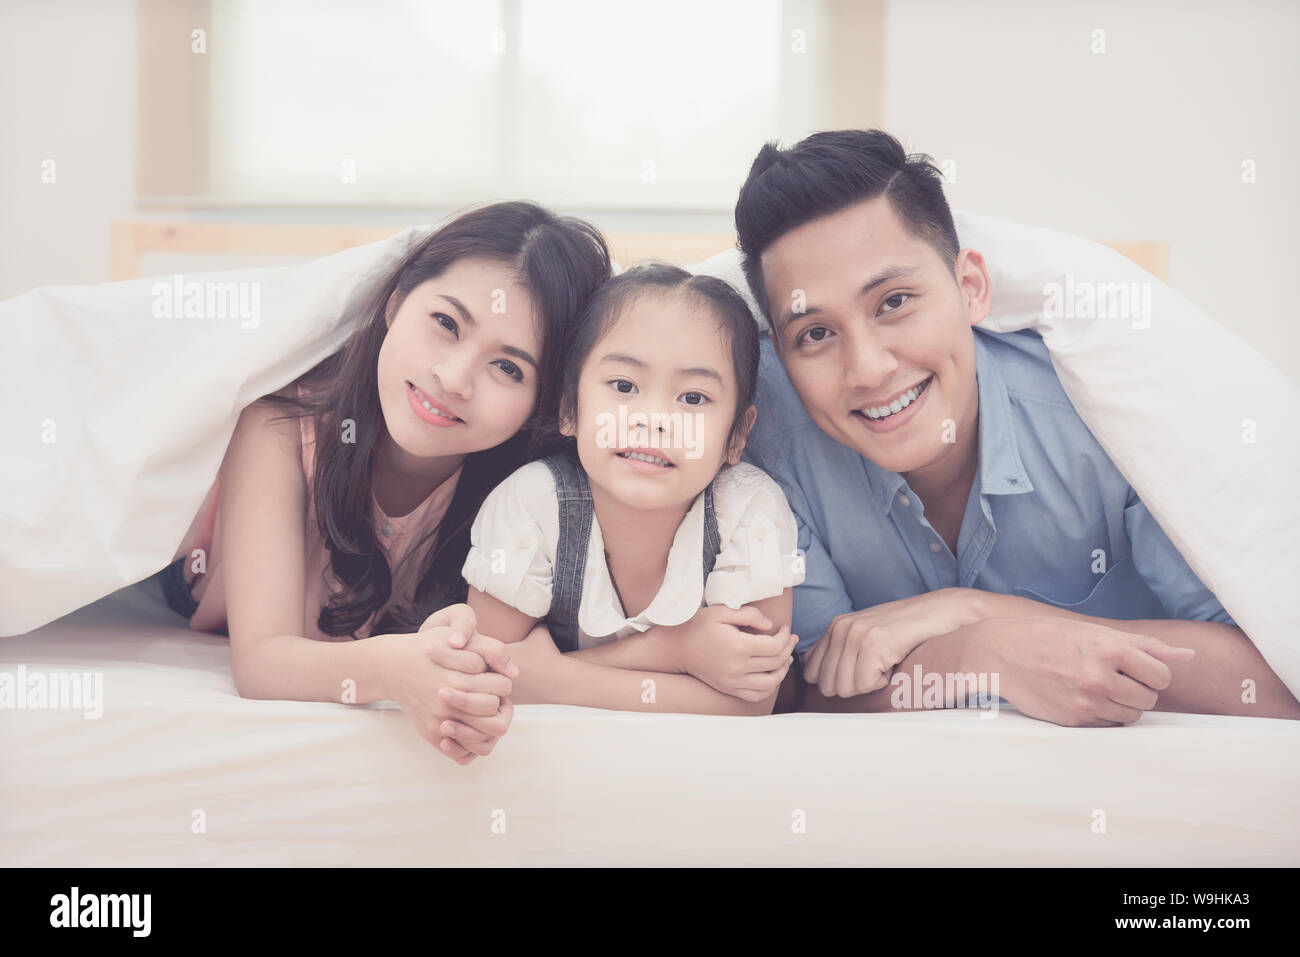 Asiatische Familie glücklich lächelnd und auf dem Bett zu Hause entspannen. Foto serie von Familie, Kindern und glücklichen Menschen. Stockfoto